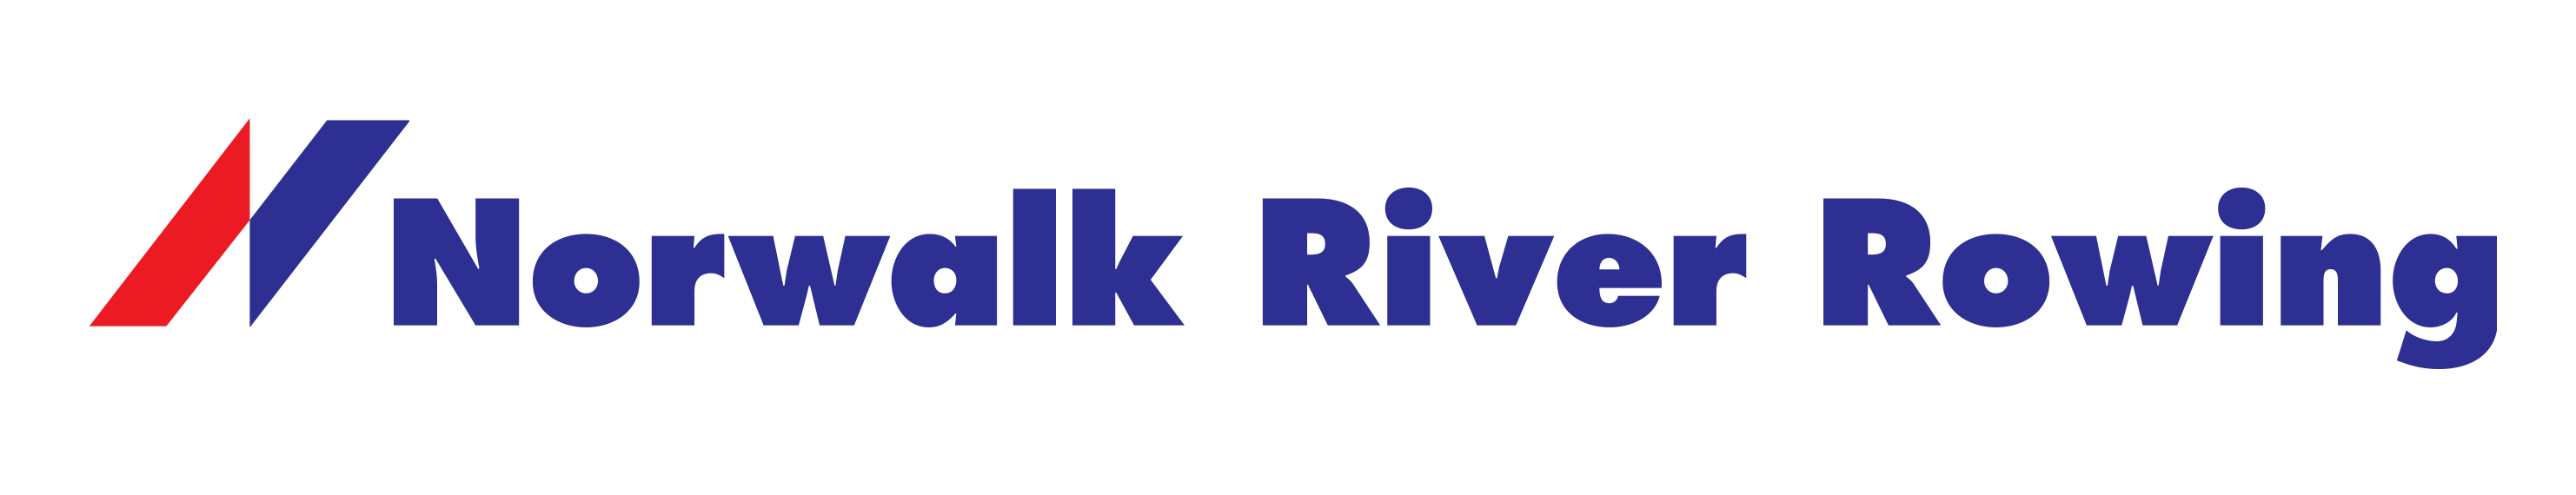 Norwalk River Rowing